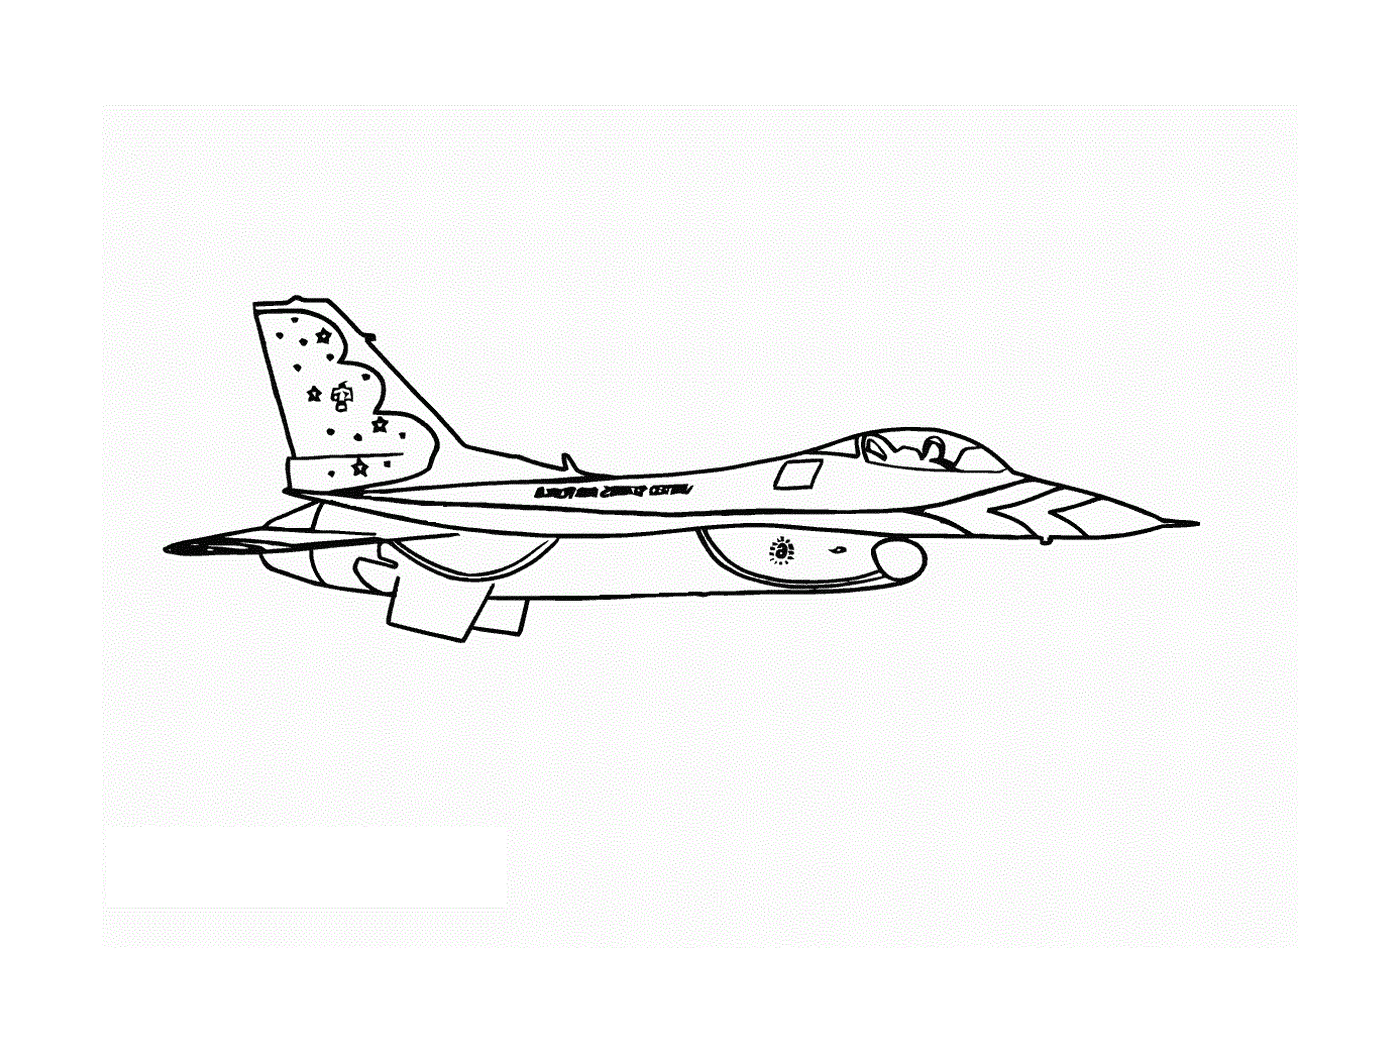  Se dibuja un avión de combate 